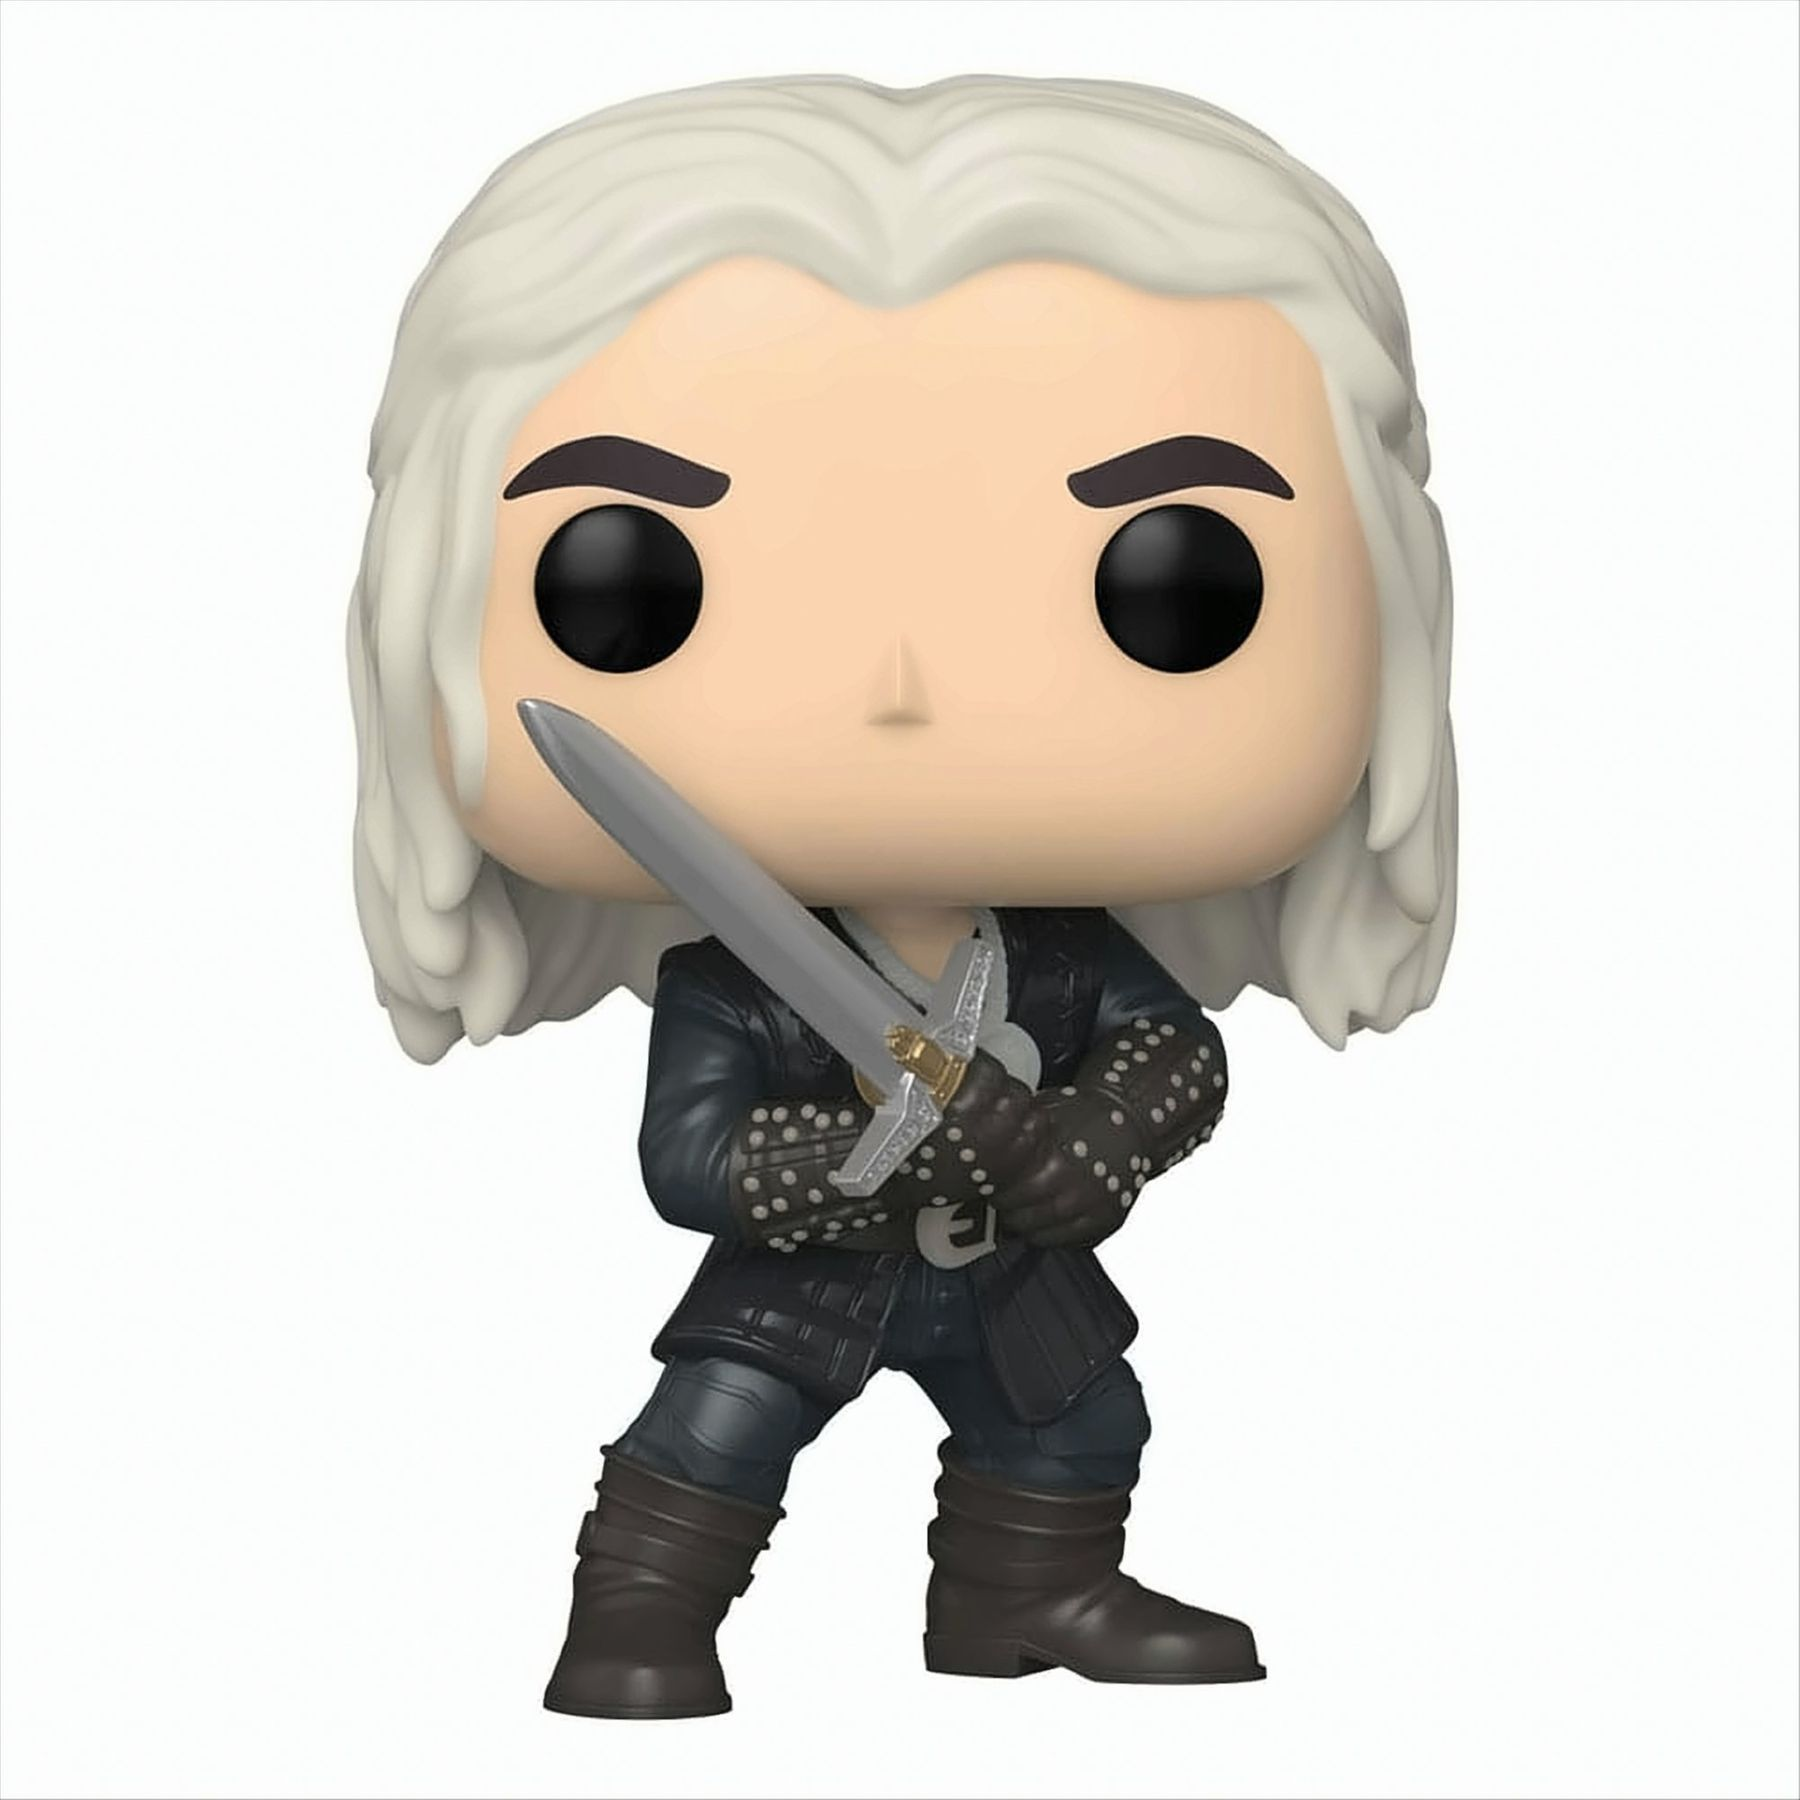 The Geralt NETFLIX - - - Witcher POP